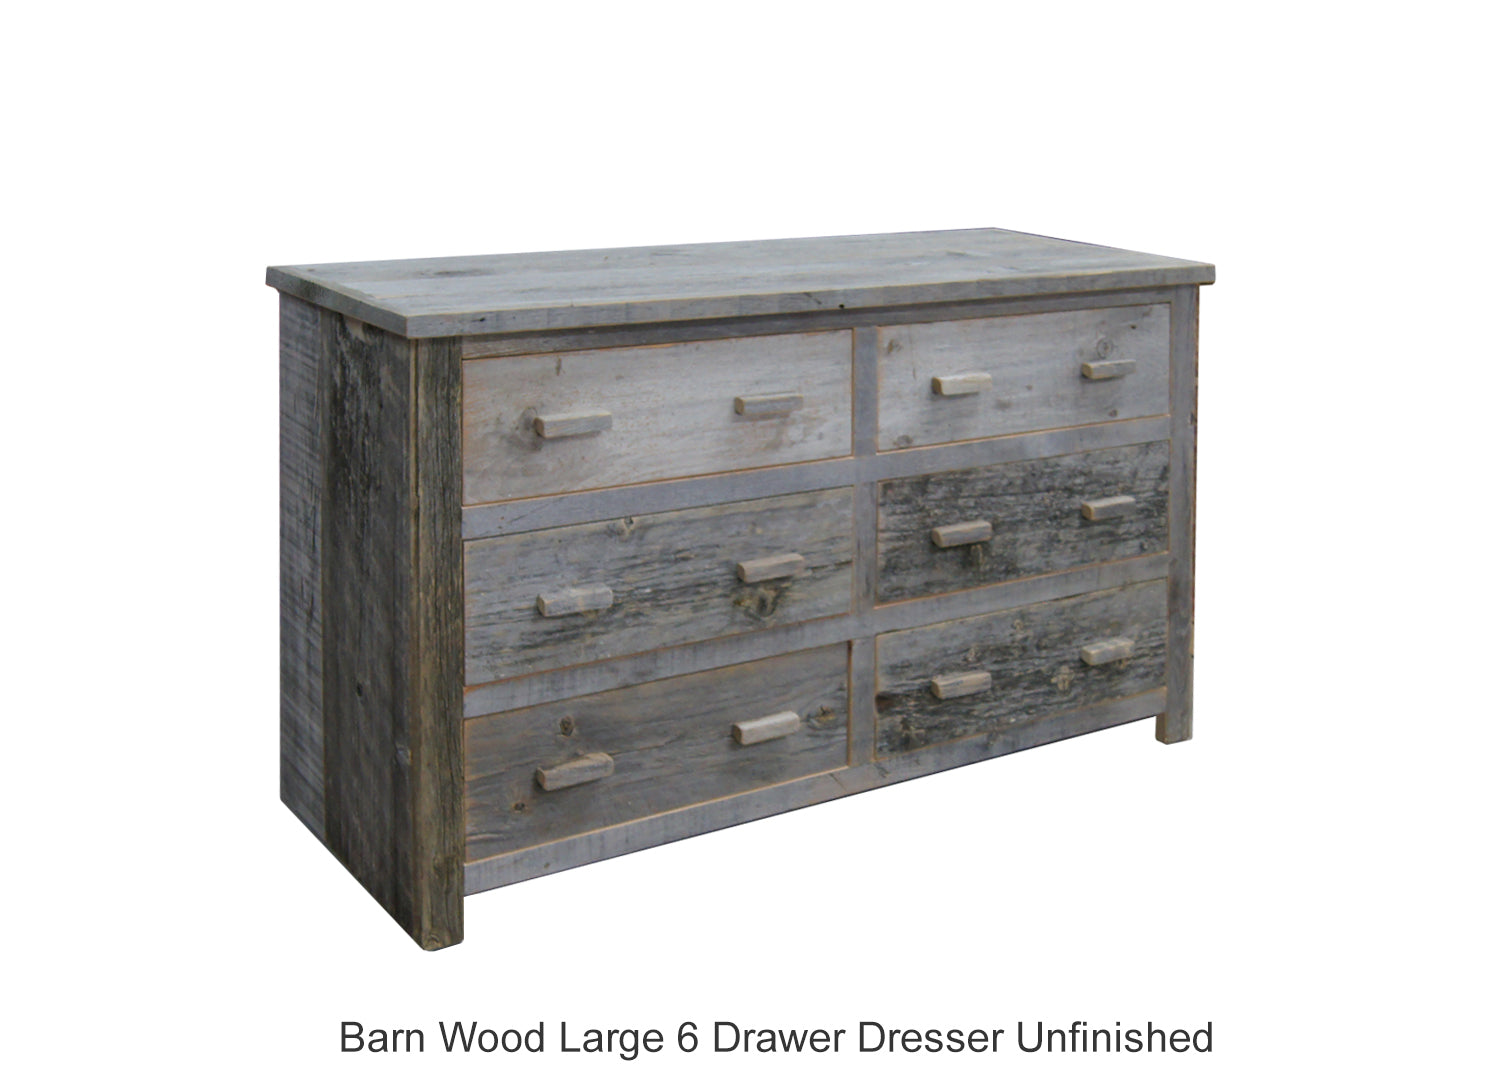 Barn Wood Large 6 Drawer Dresser Unfinished